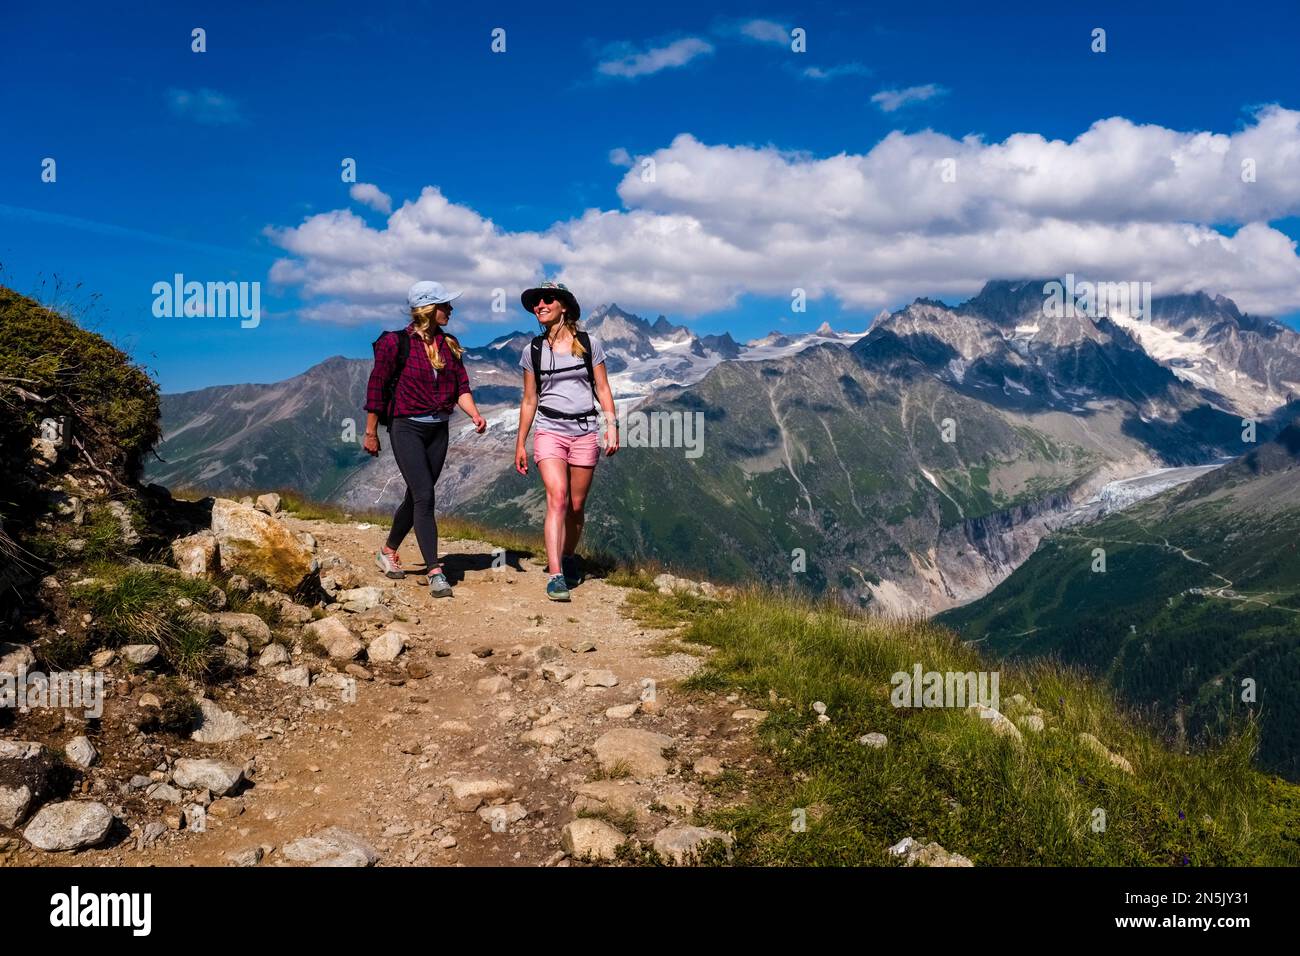 Deux jeunes randonneurs femelles marchant sur un sentier près de la Flégère, les sommets de la partie est du massif du Mont blanc au loin. Banque D'Images